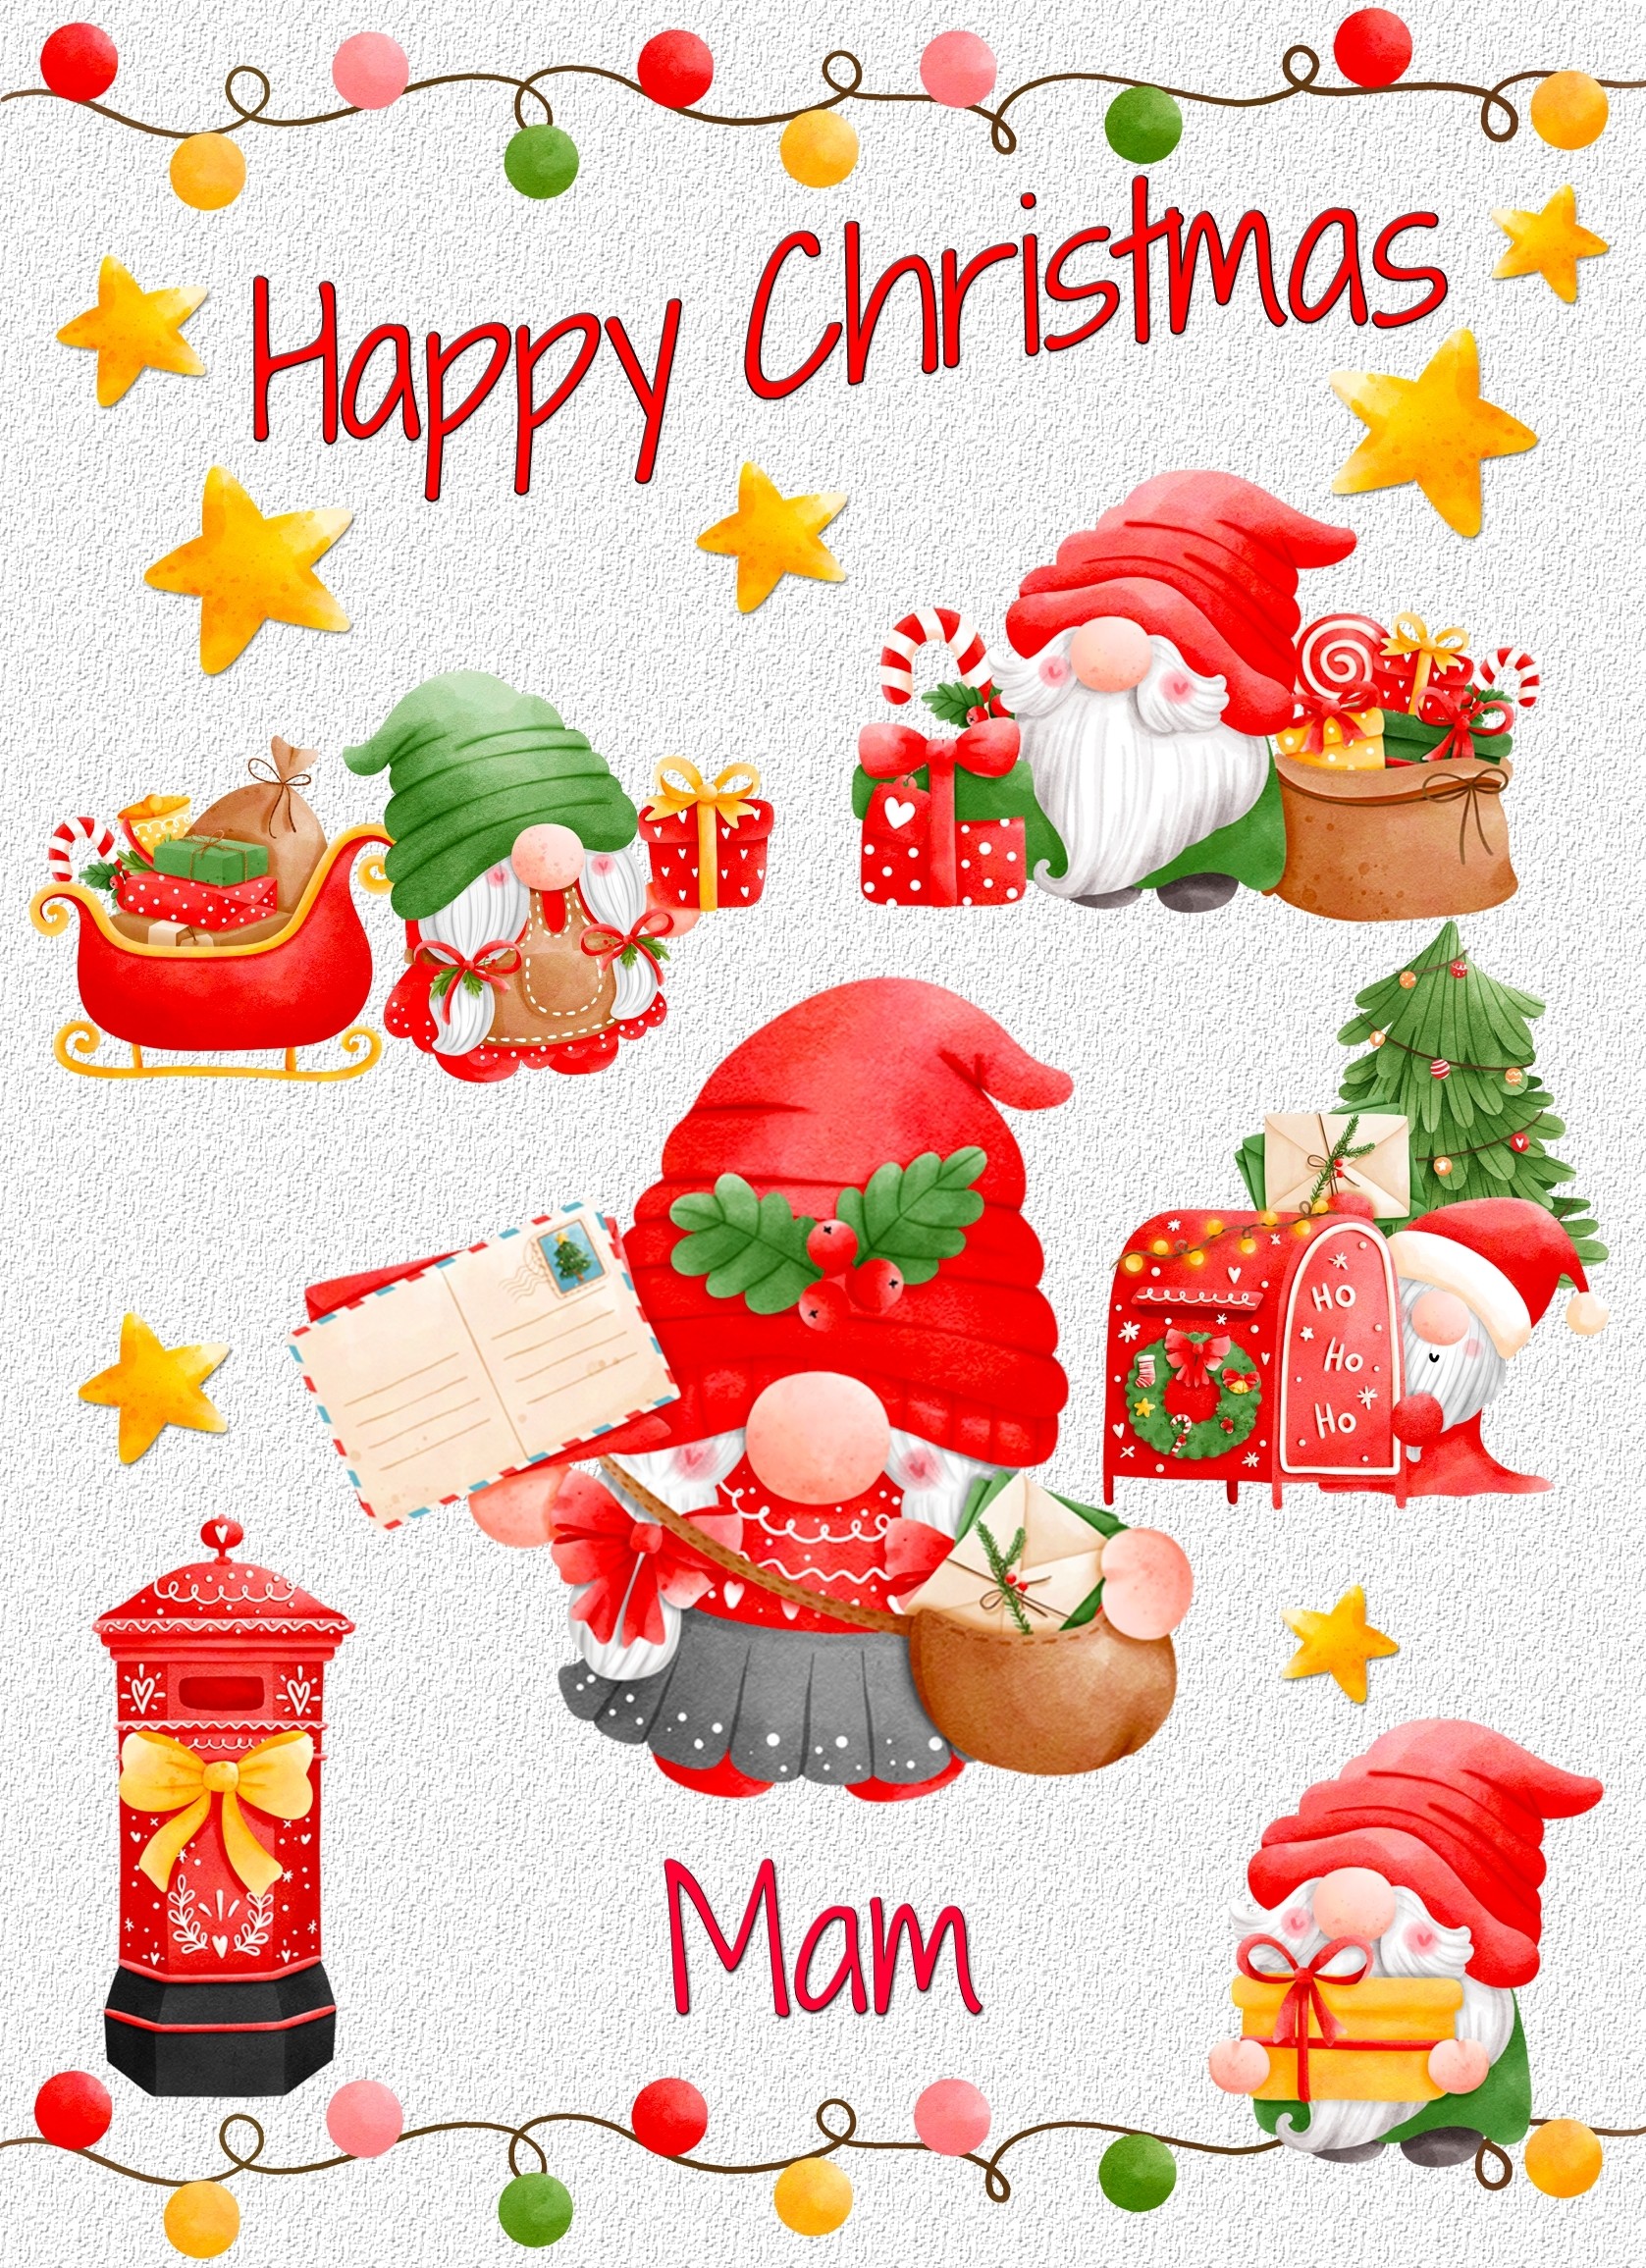 Christmas Card For Mam (Gnome, White)